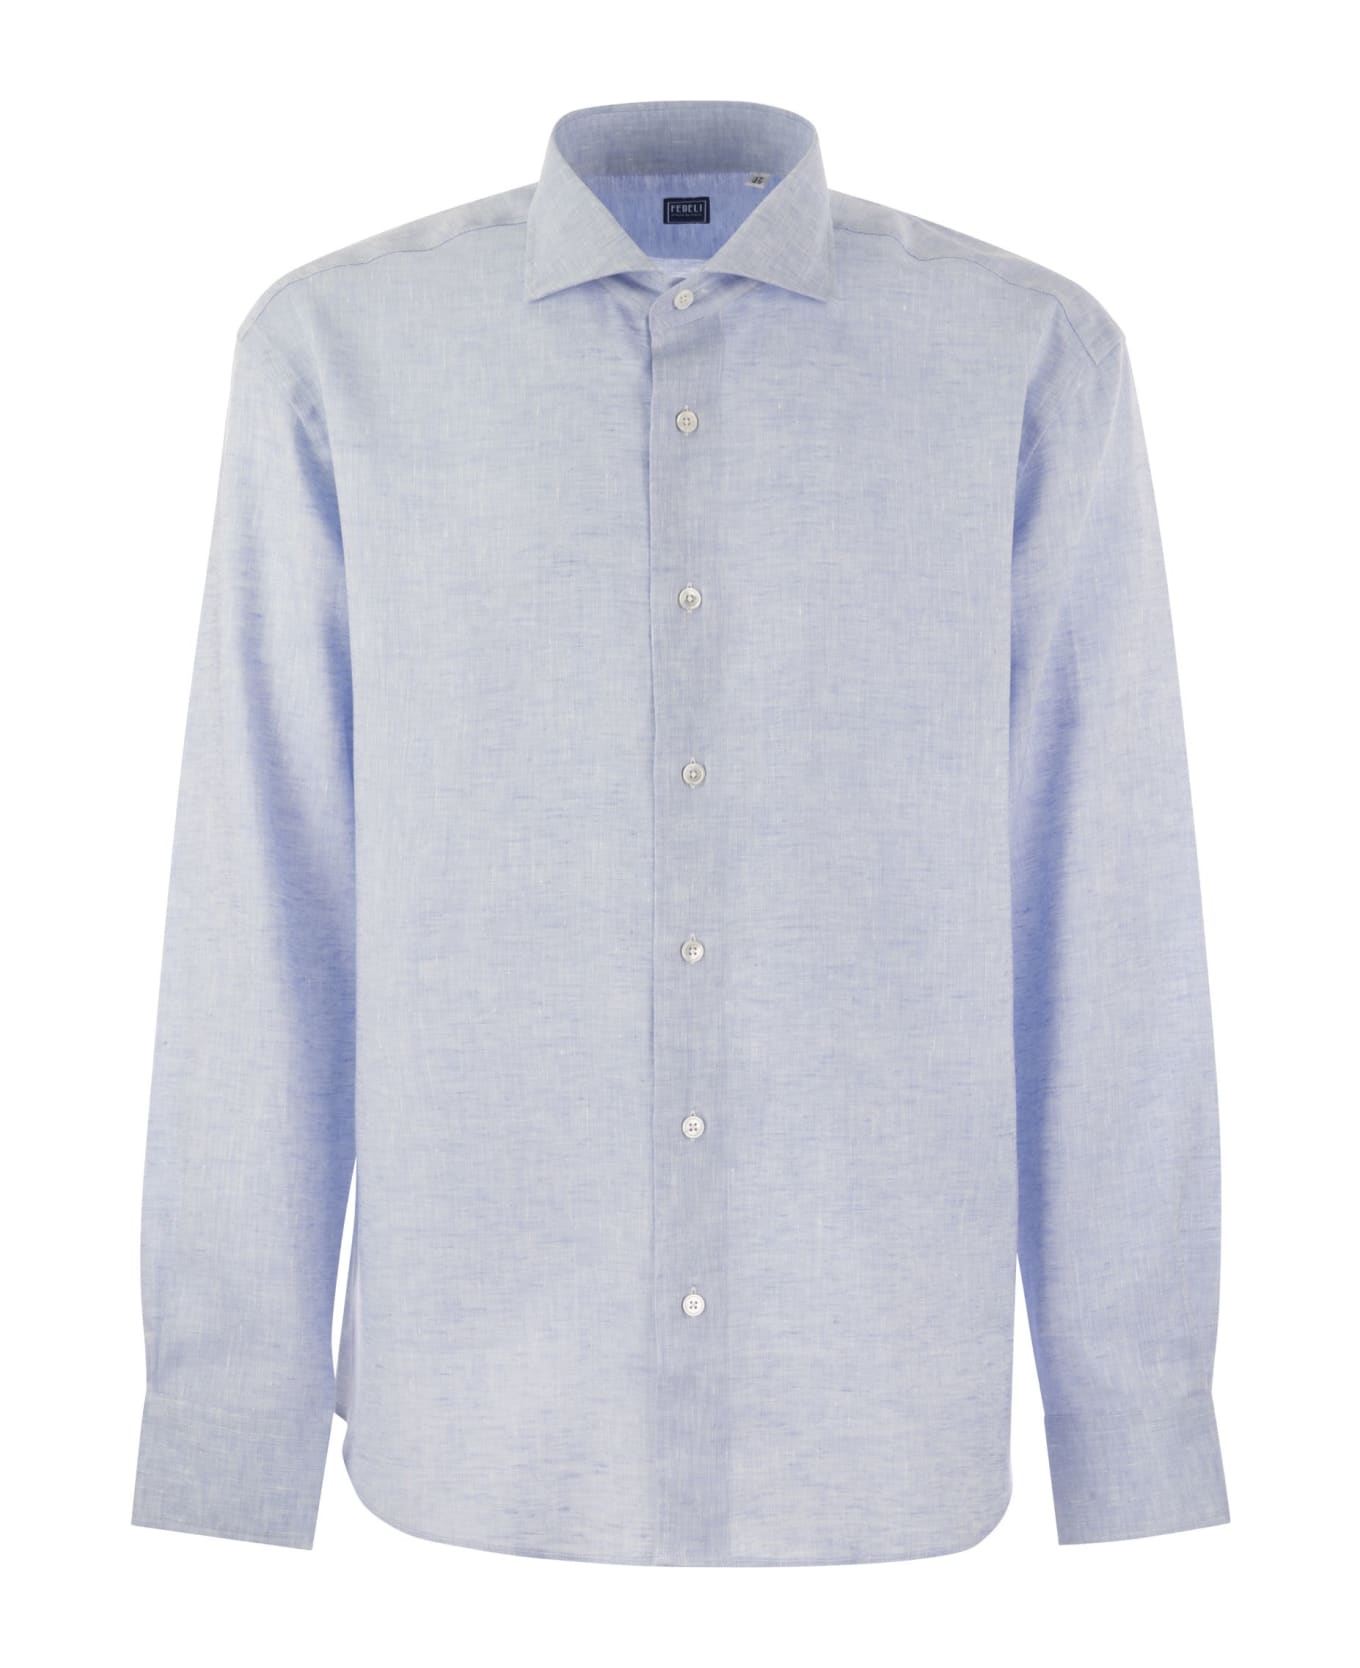 Fedeli Roby - Linen Shirt - Light Blue シャツ